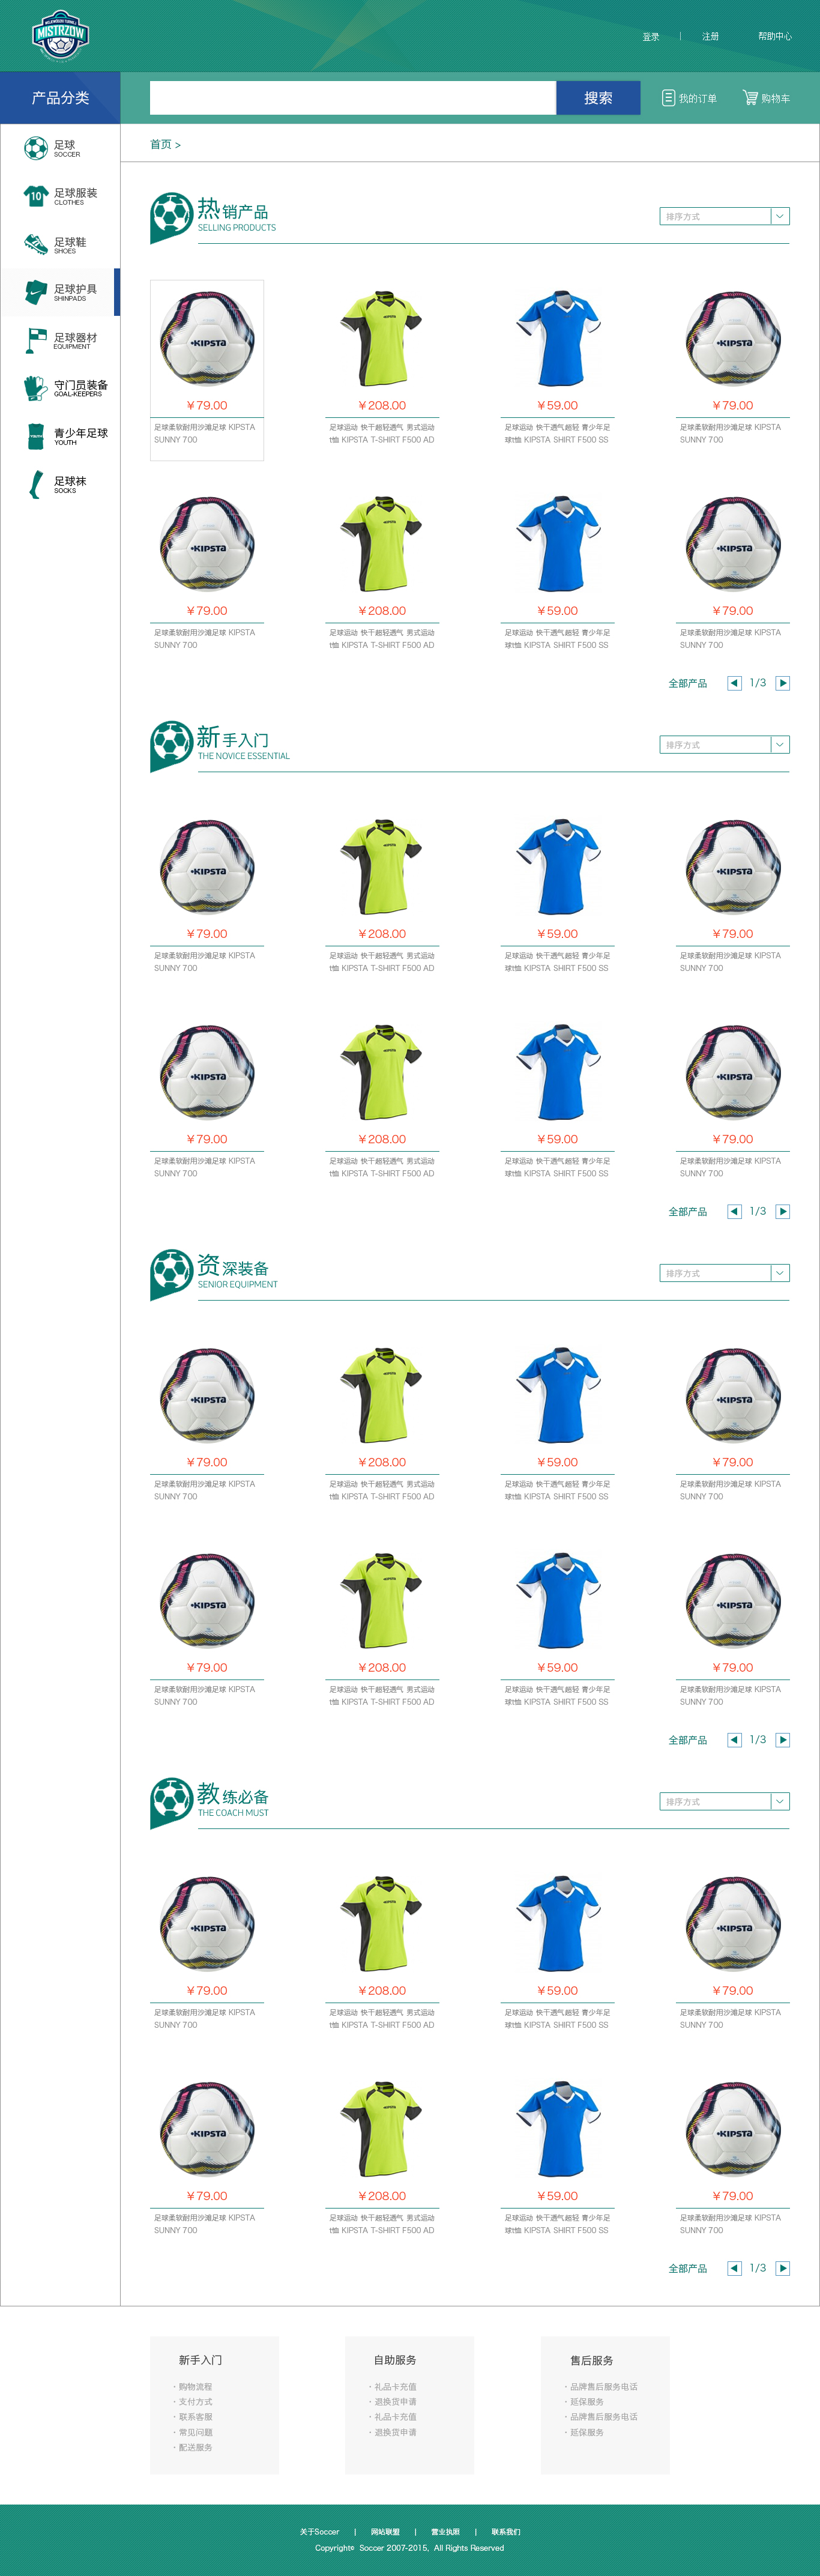 绿色的足球体育用品商城产品列表页面模板